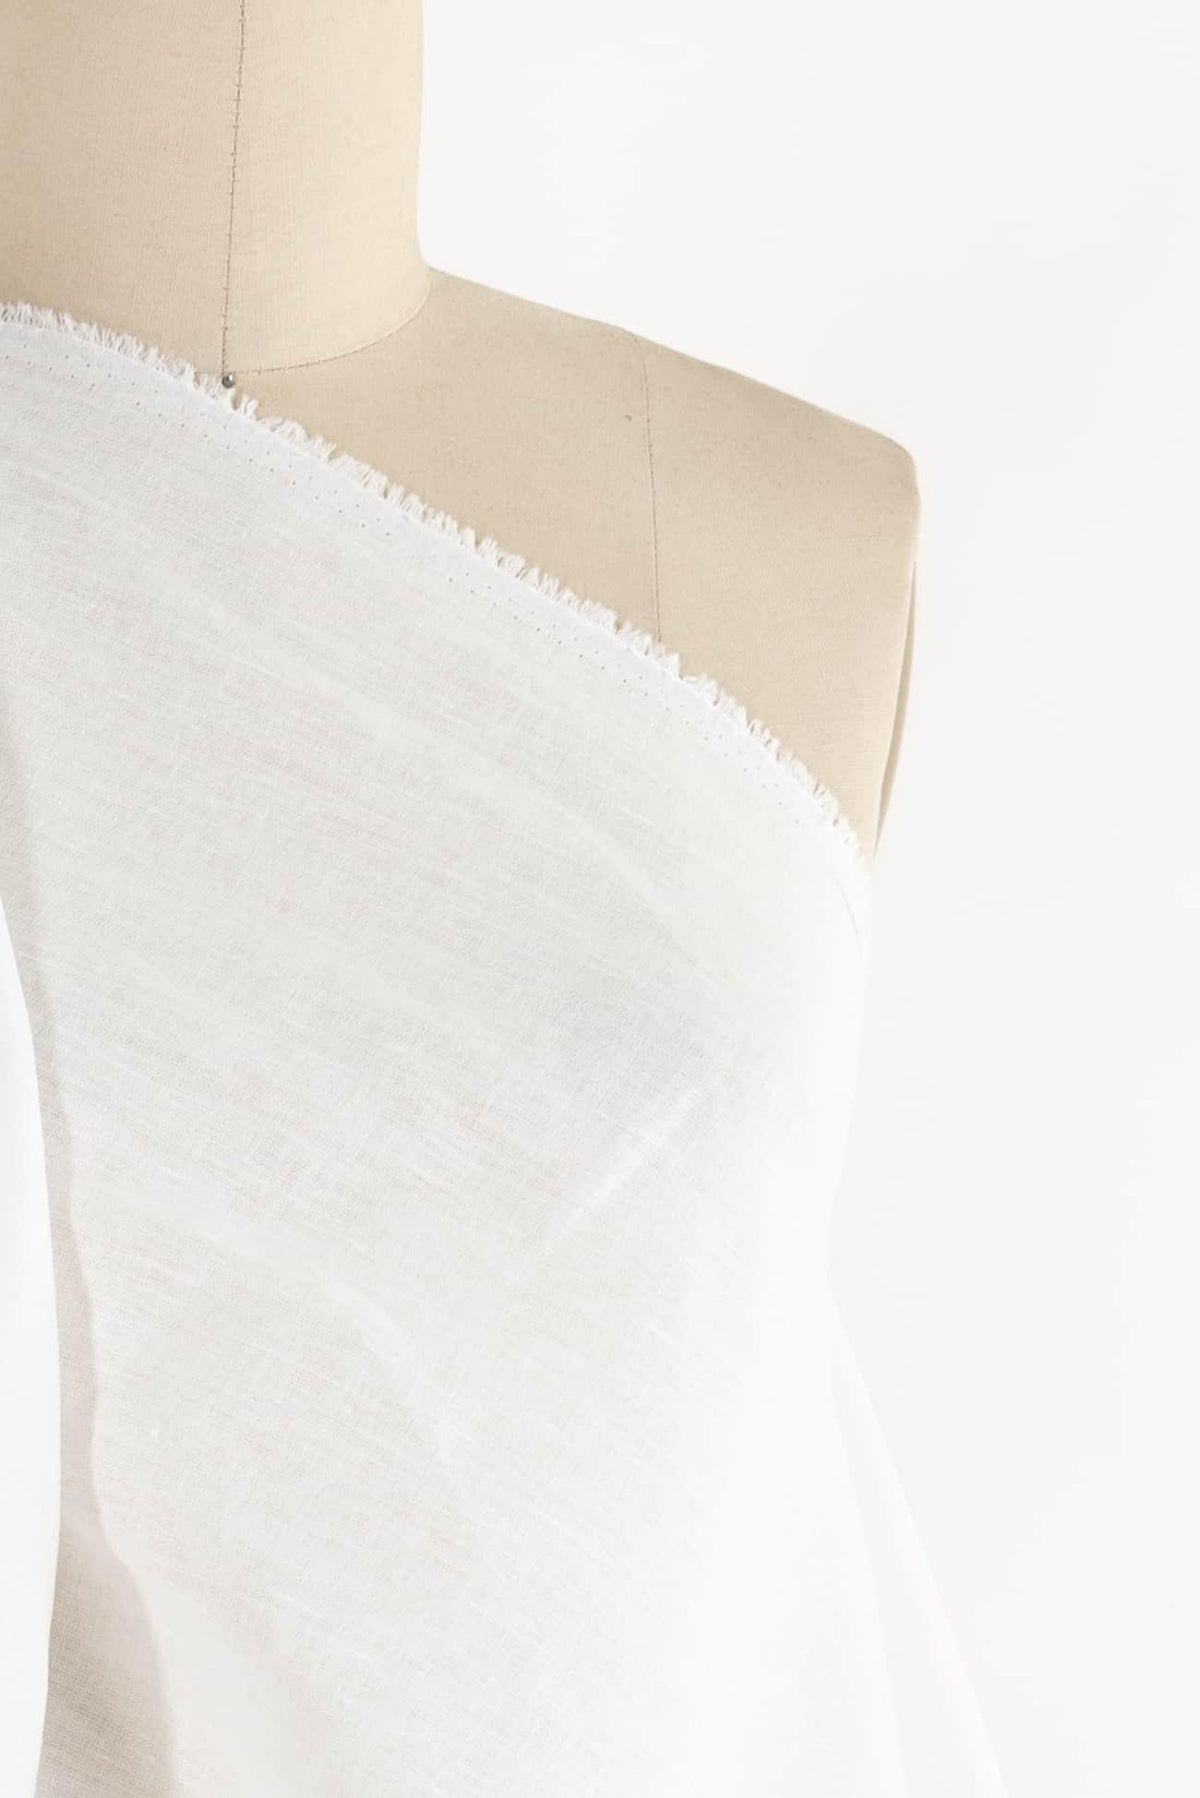 Chalk White Euro Linen/Cotton Woven - Marcy Tilton Fabrics